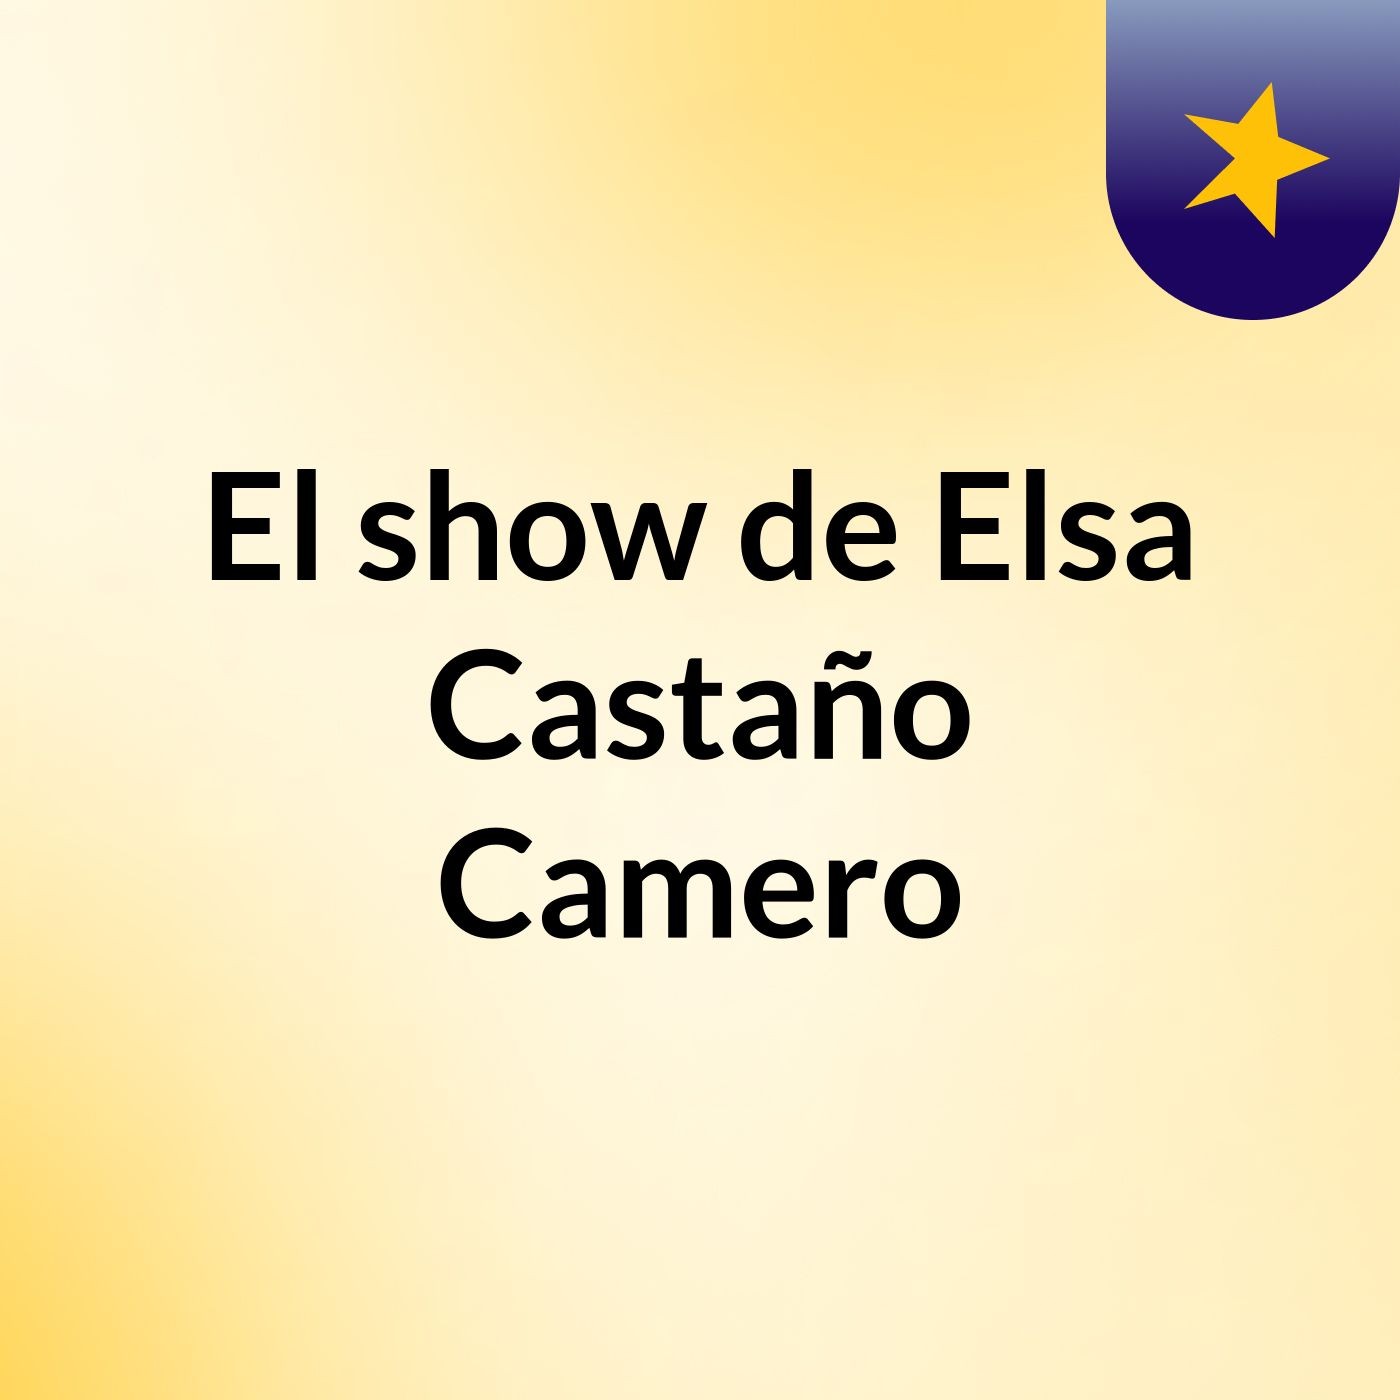 El show de Elsa Castaño Camero